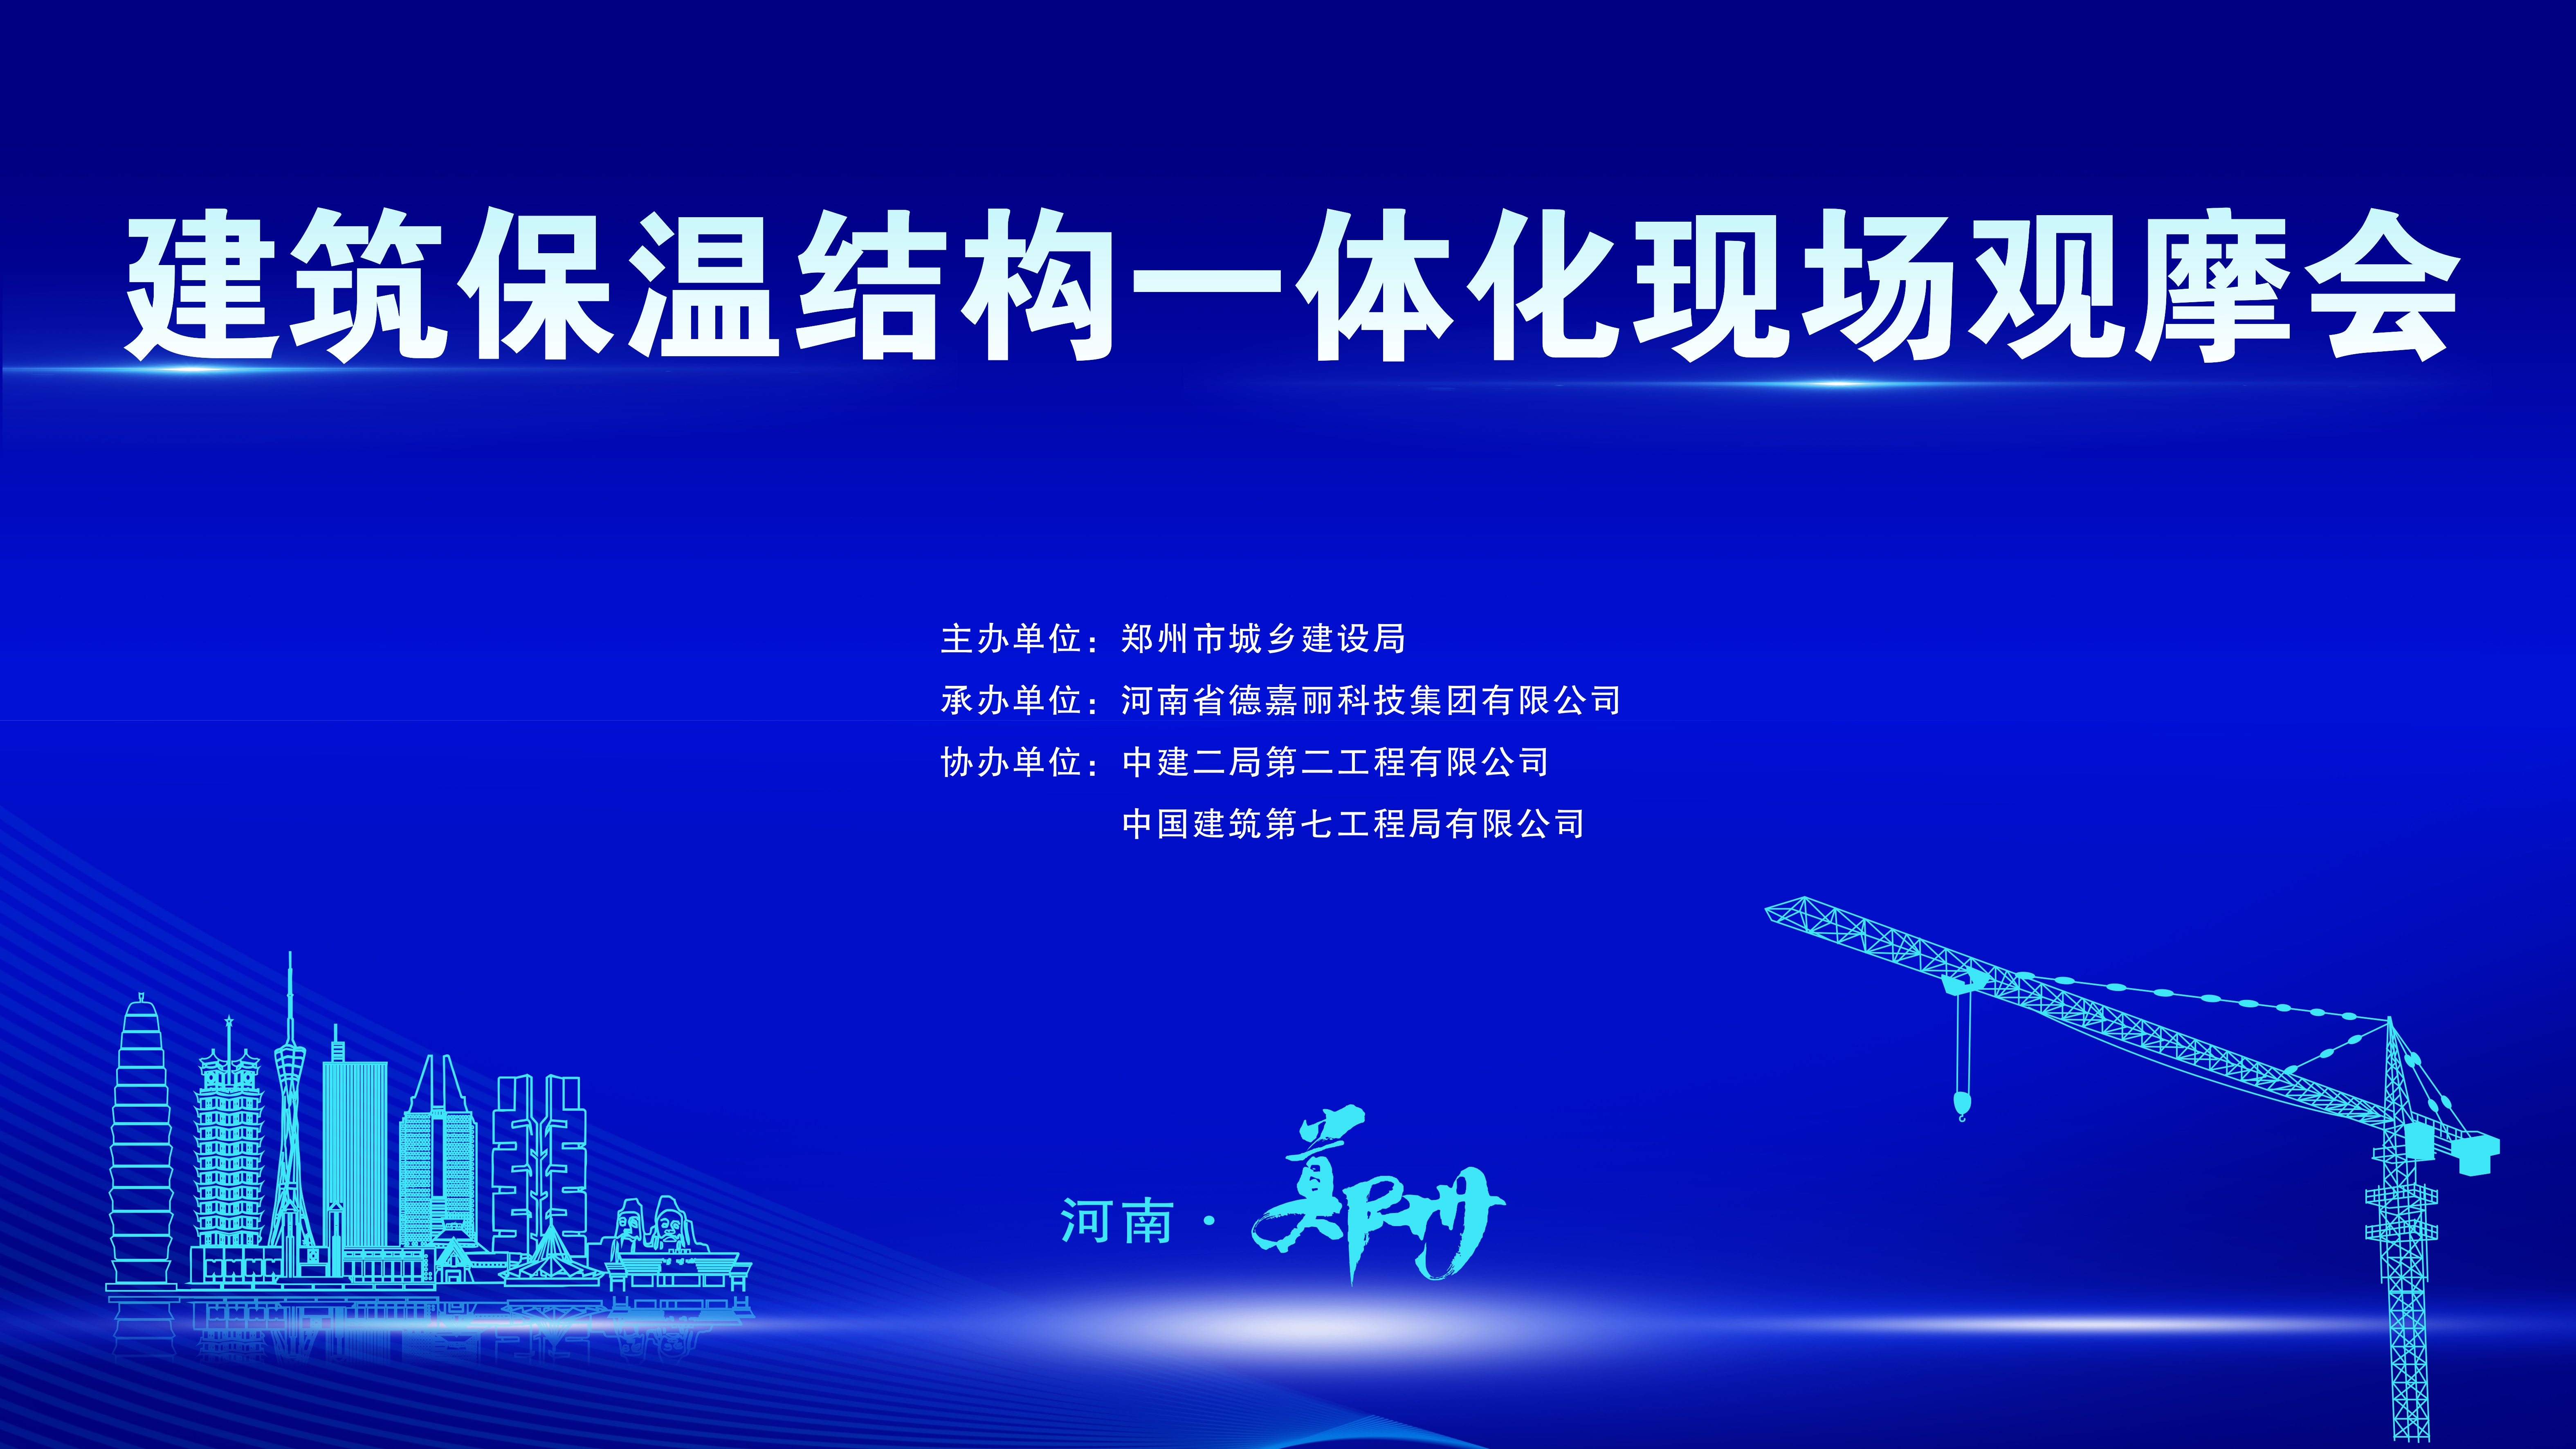 河南省德嘉丽科技集团承办建筑保温结构一体现场观摩会顺利举行